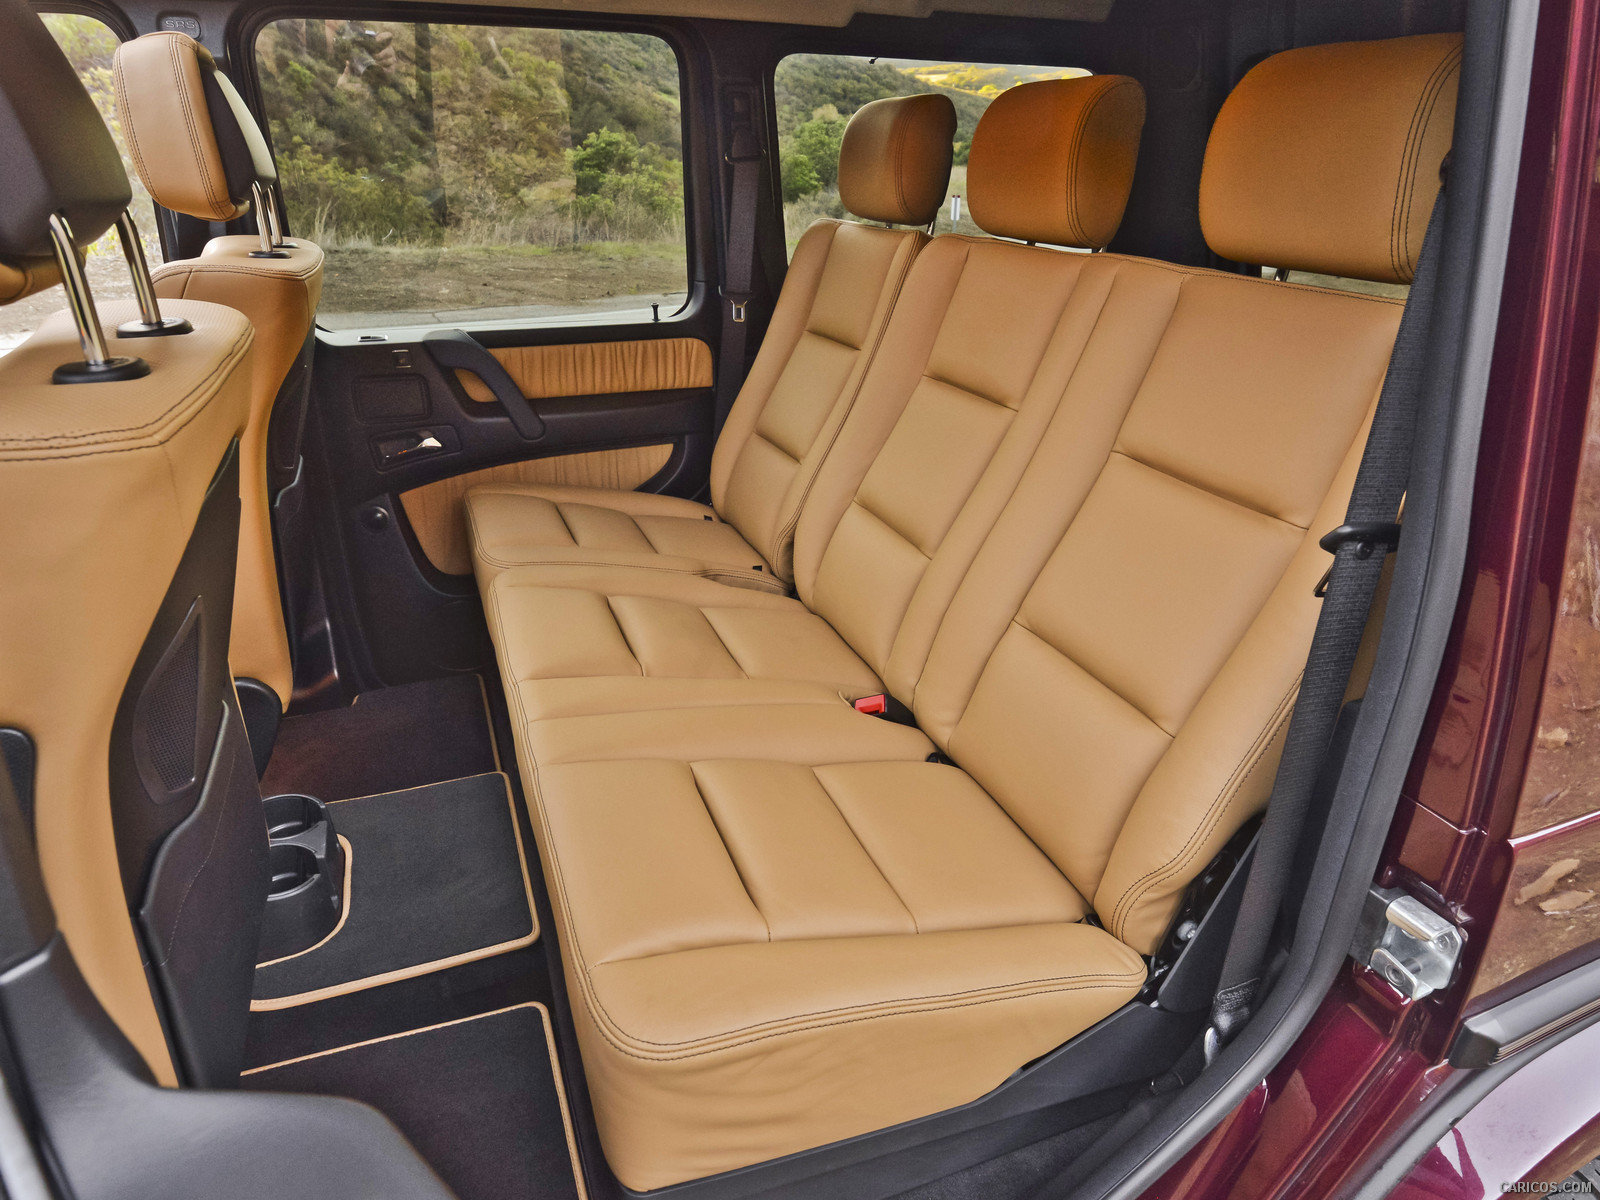 13 Mercedes Benz G550 Interior Rear Seats Hd Wallpaper 69